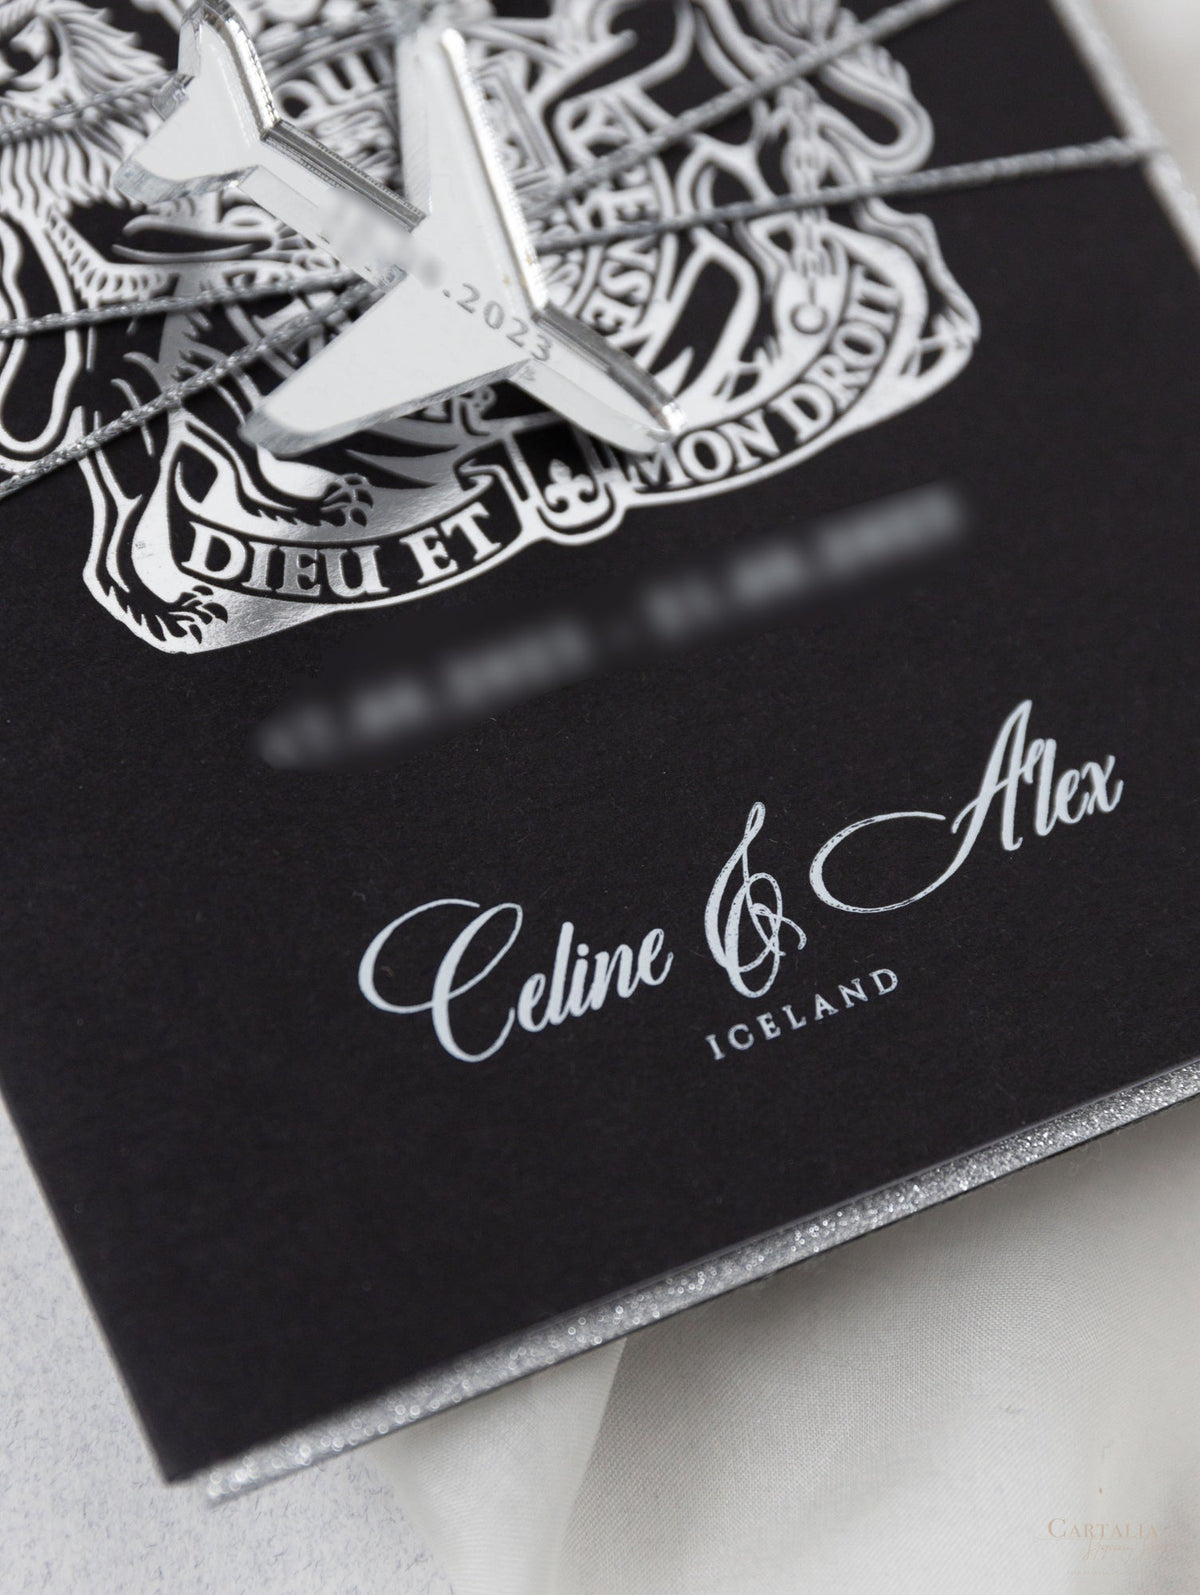 Black Luxury Passport Wedding Invitation Suite avec des paillettes argentées et un vrai papier d'or